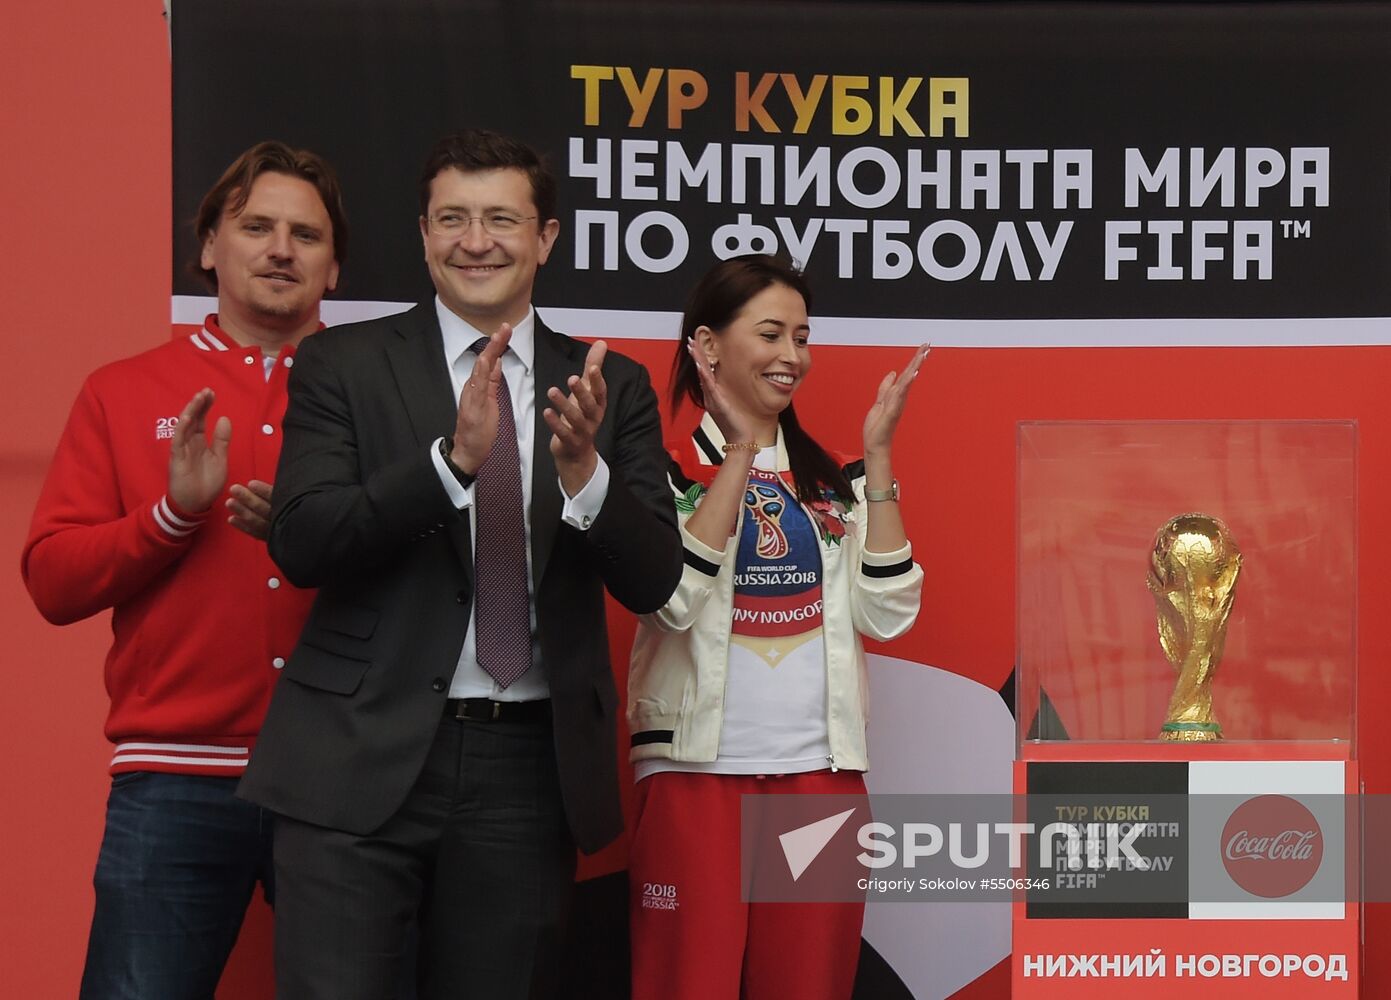 2018 FIFA World Cup trophy presented in Nizhny Novgorod